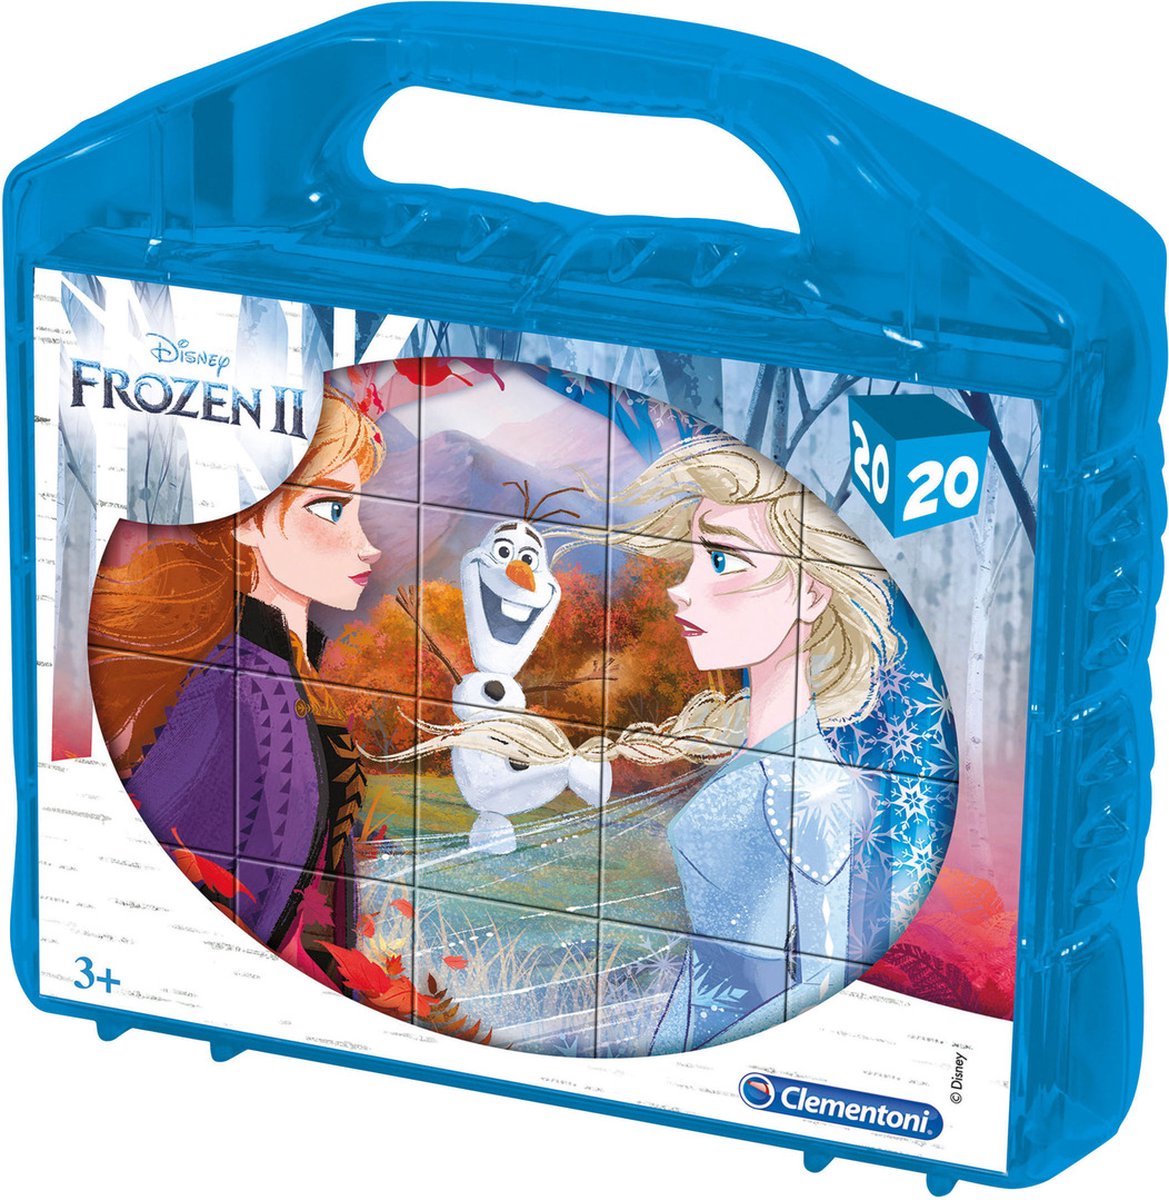 Puzzel - Blokkenpuzzel - Frozen II - Frozen II puzzel 20 delig - 6 verschillende motieven per kubus - Frozen speelgoed - incl. koffer